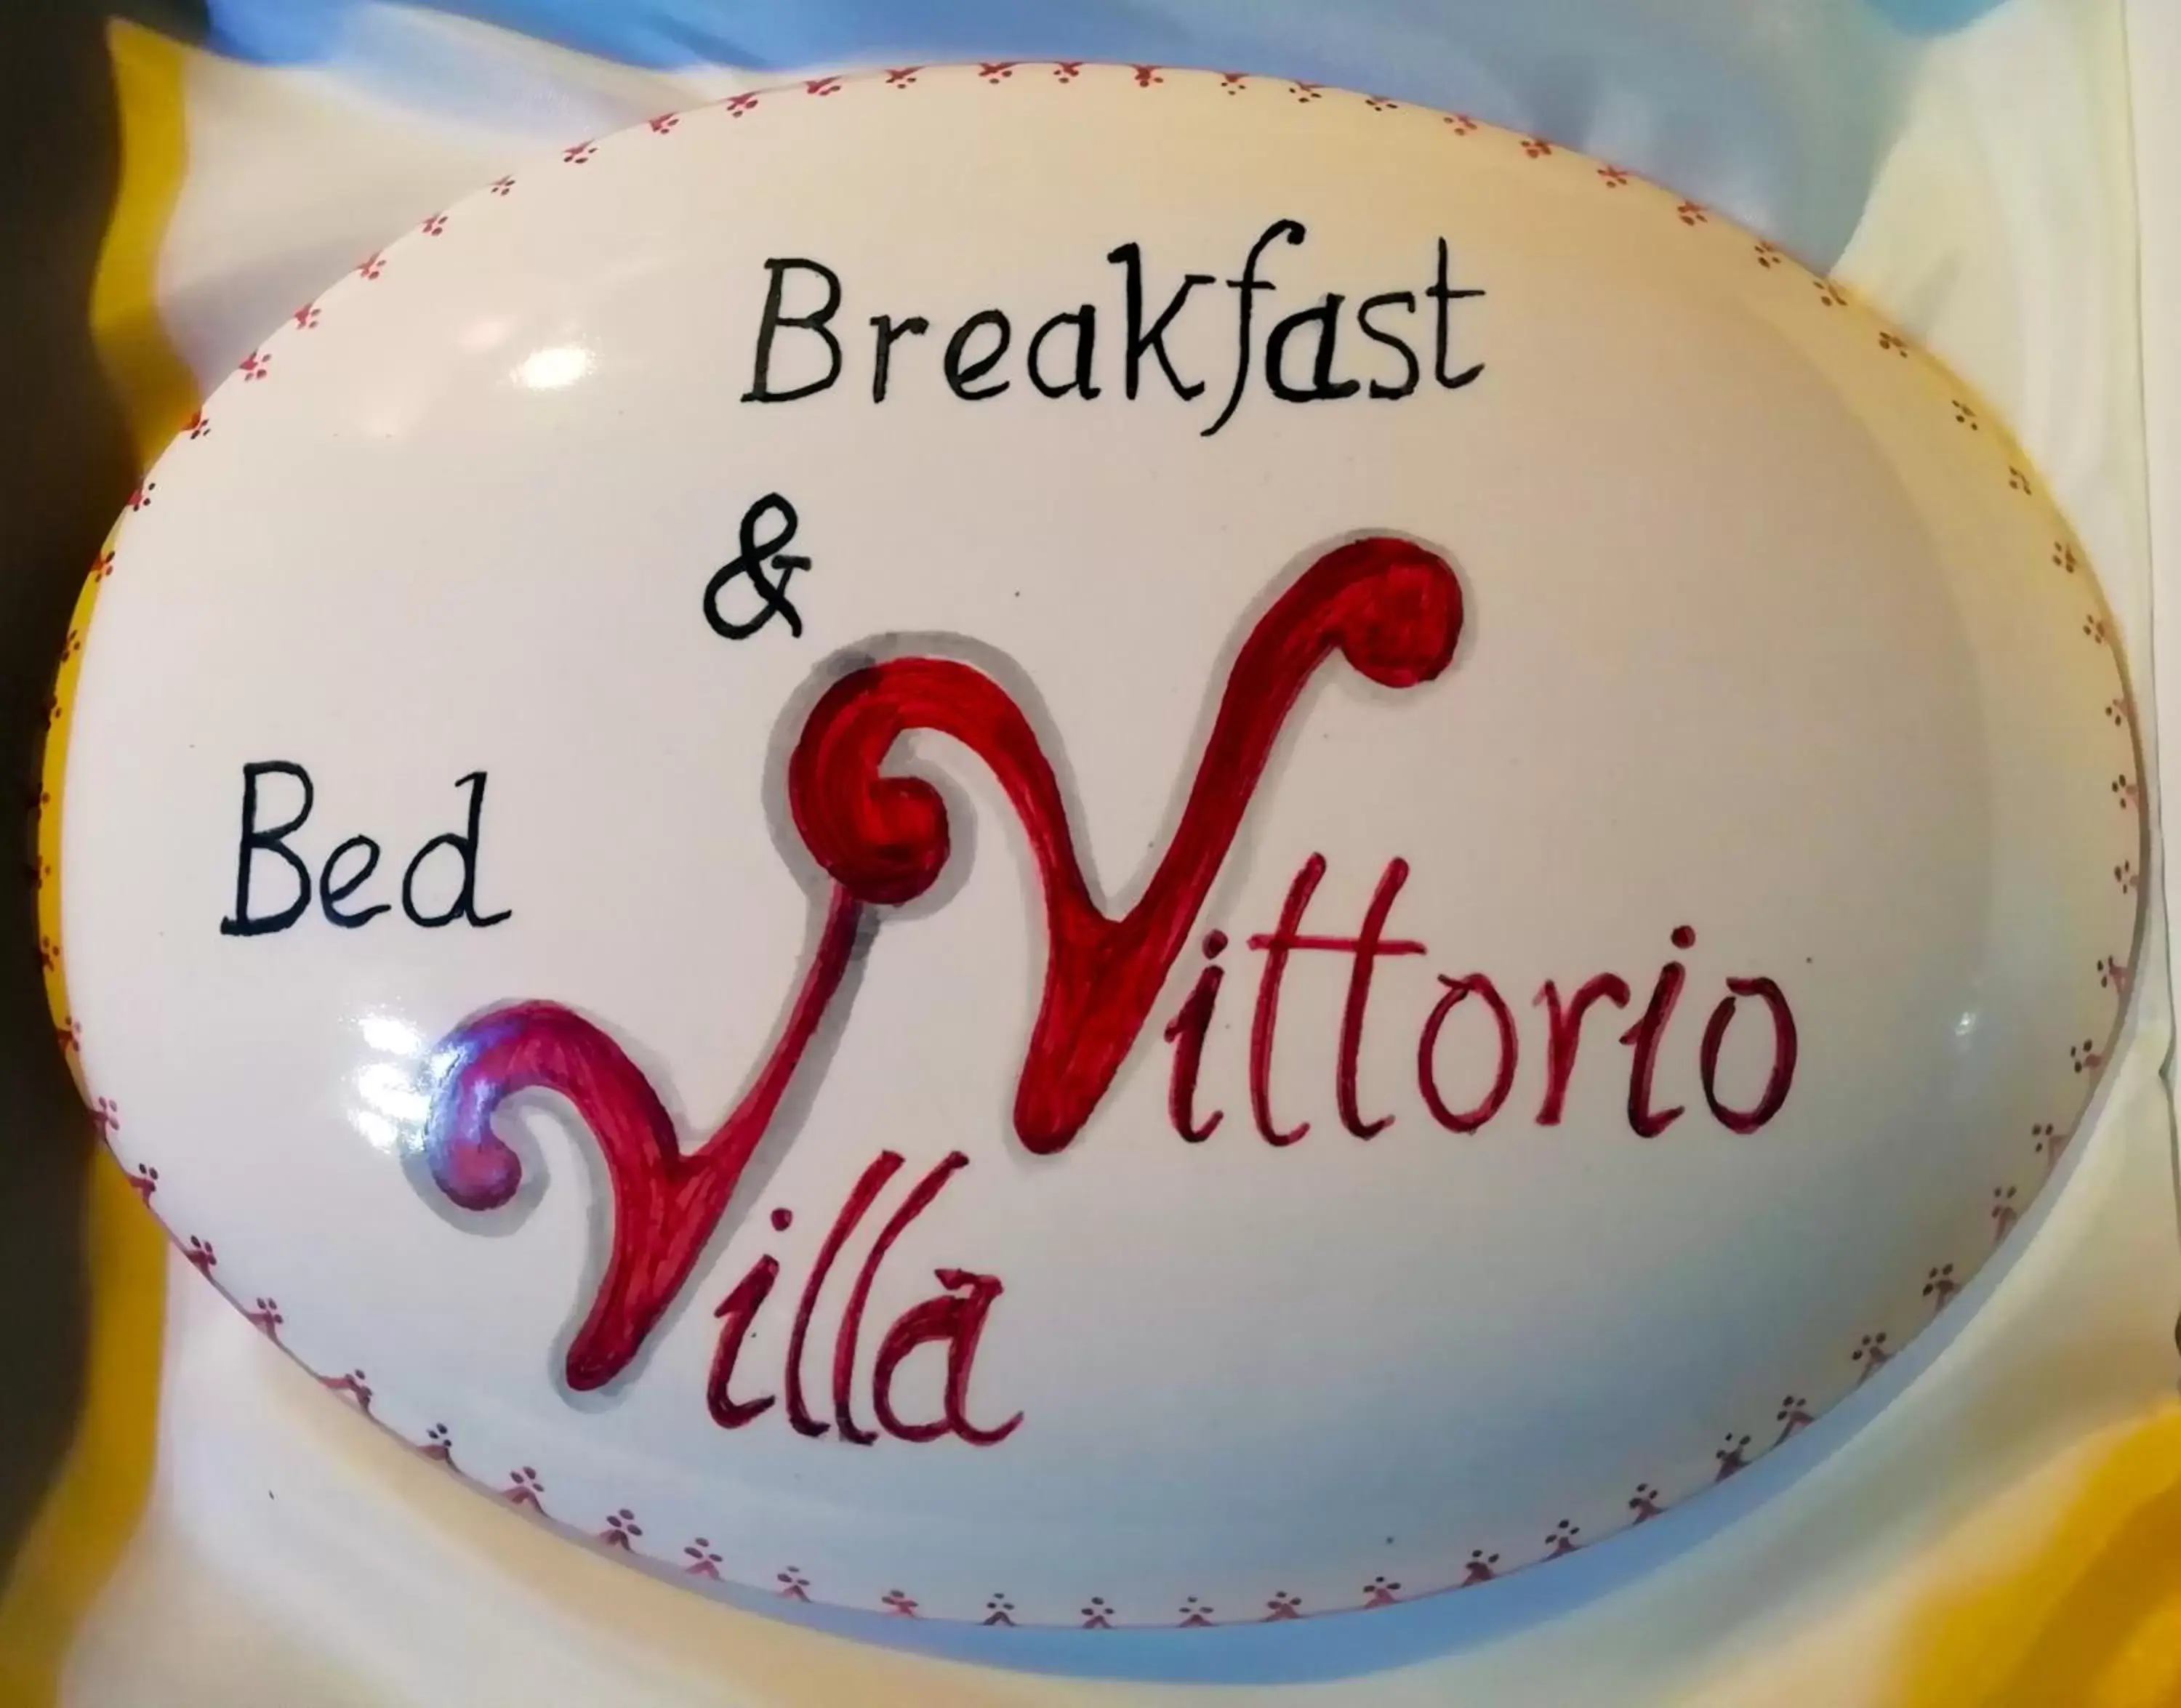 Decorative detail in B&B Maison Villa Vittorio